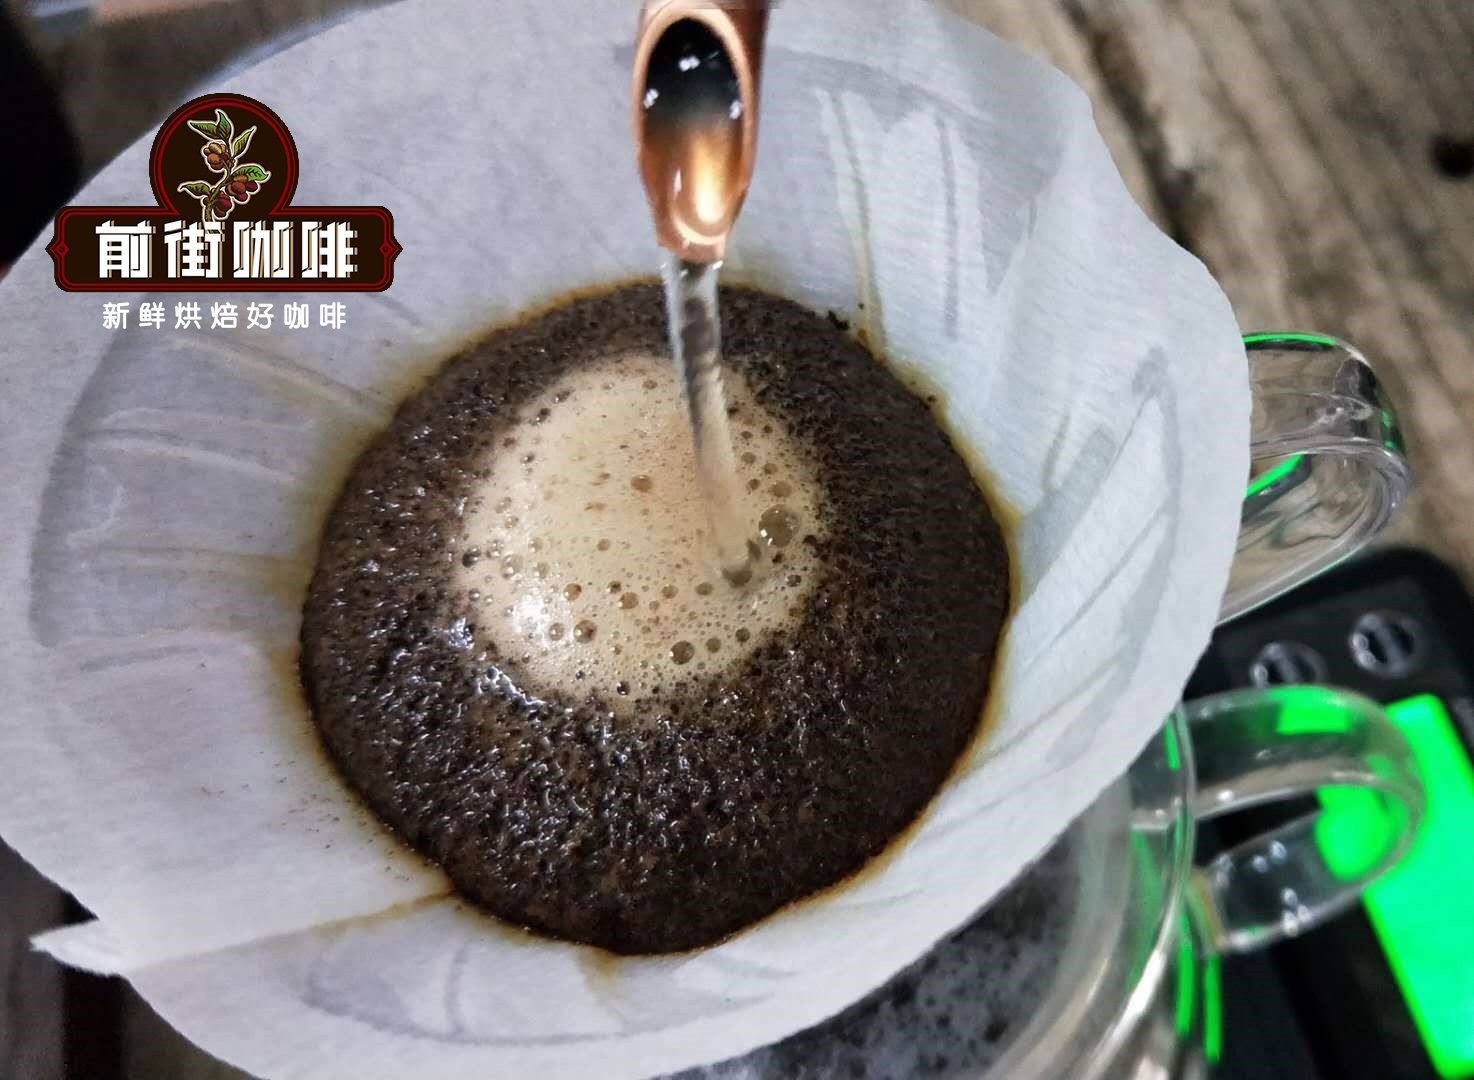  危地马拉咖啡法压壶和冷酿冲煮出来的风味哪种比较好喝